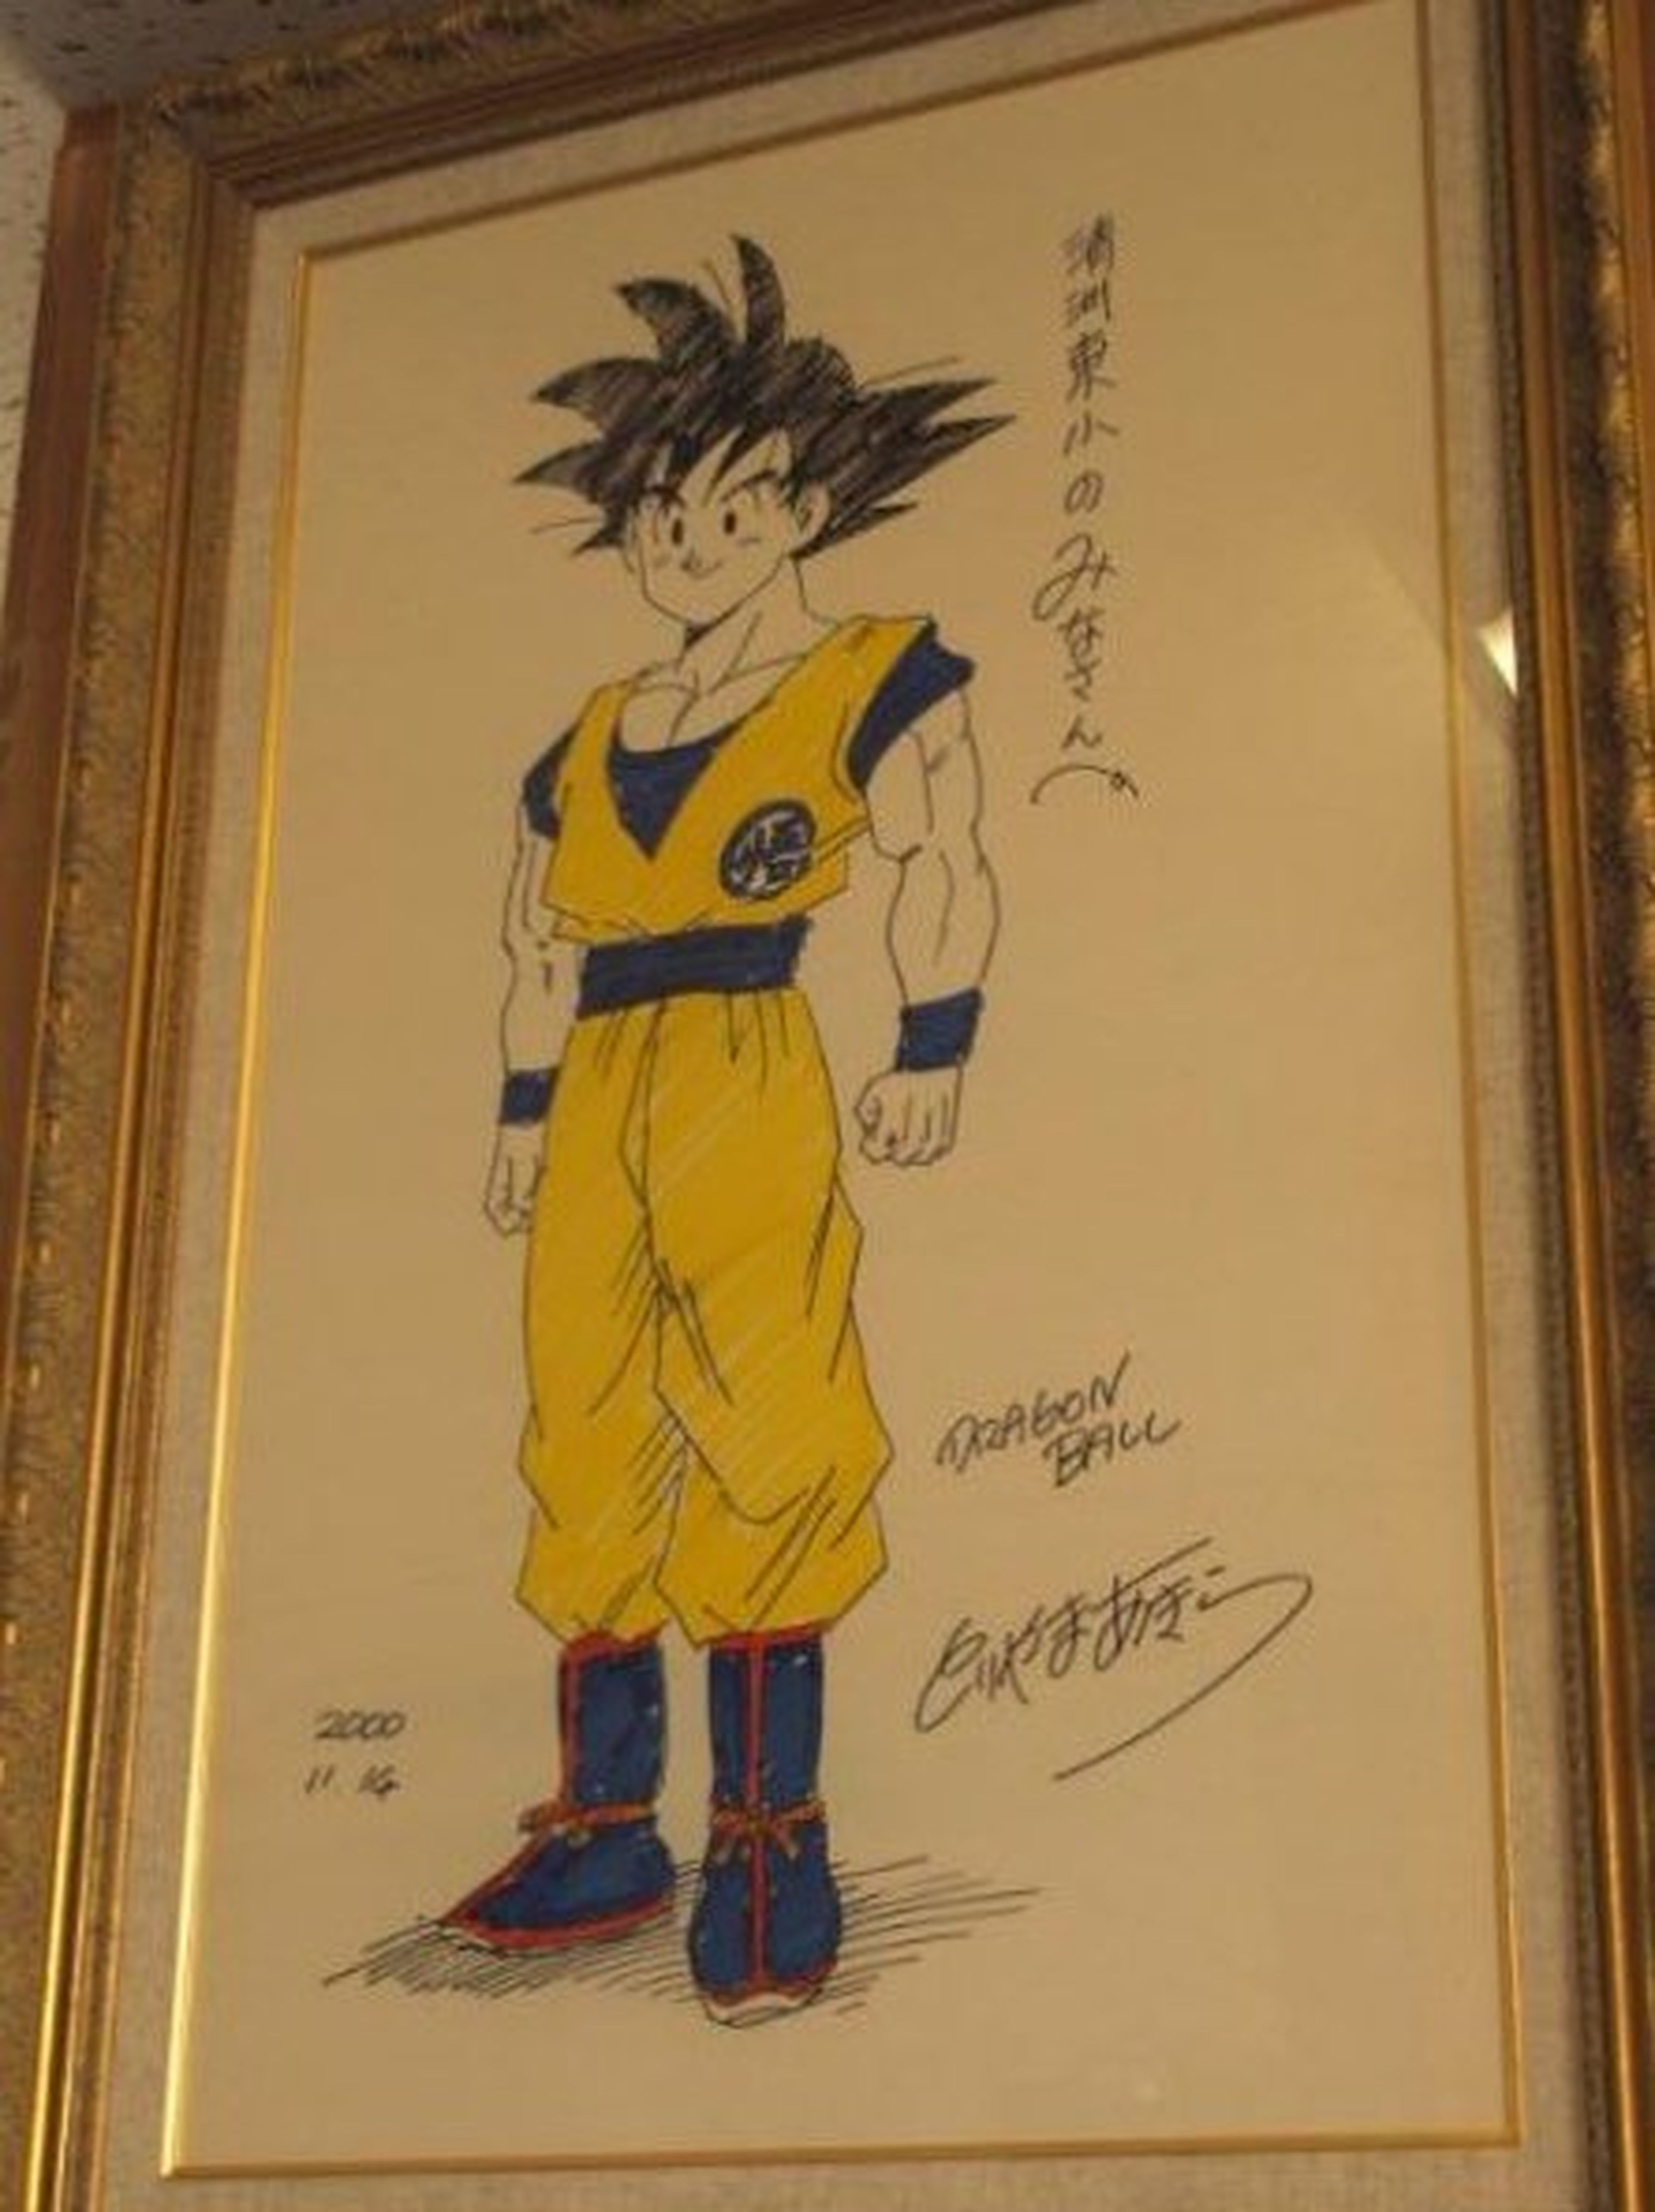 Dragon Ball - Sale a la luz un dibujo rarísimo de Goku dibujado por Akira Toriyama en el año 2000